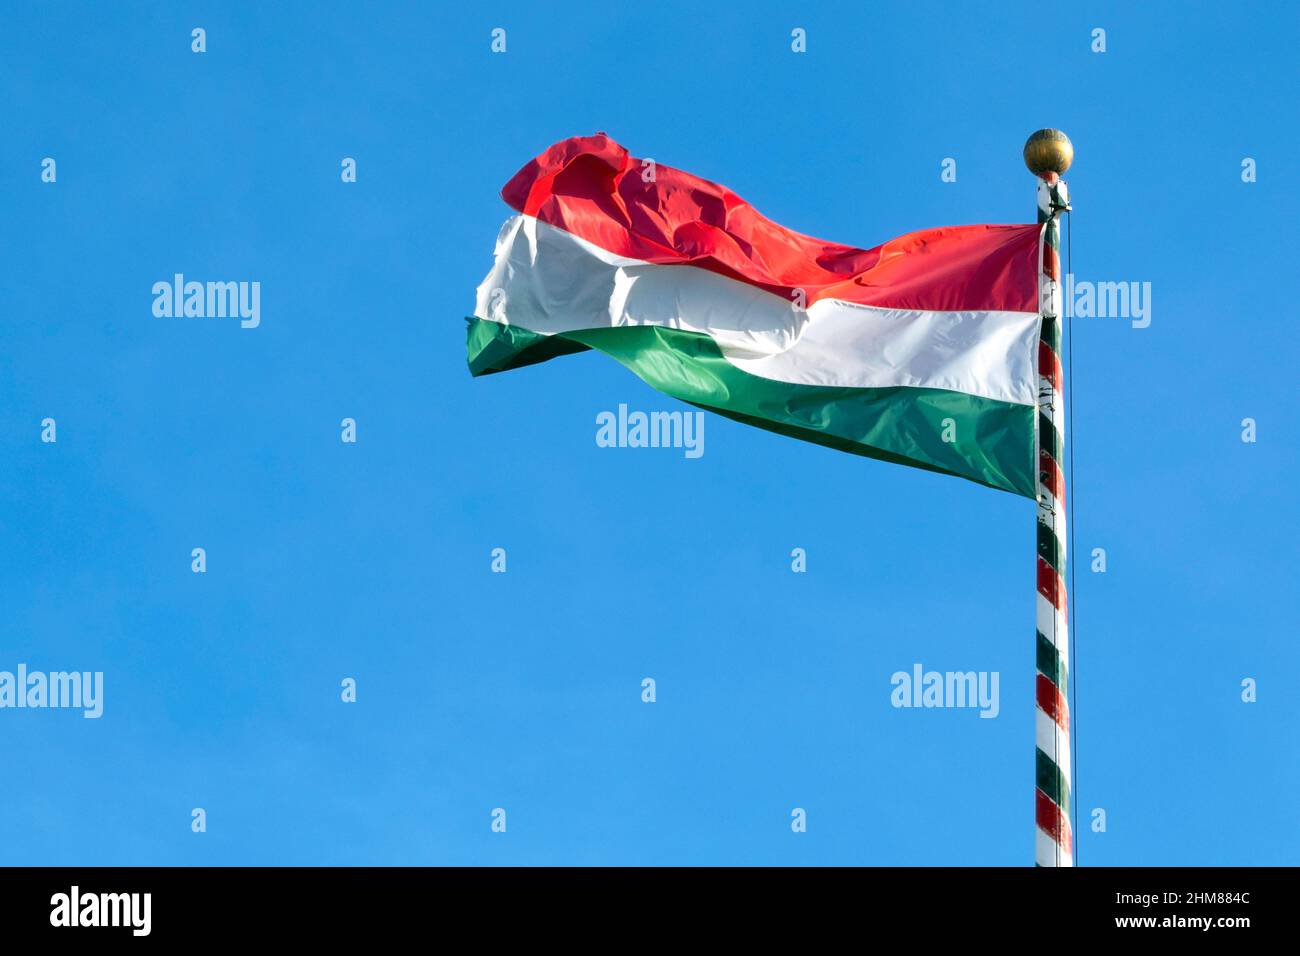 Bandiera ungherese o bandiera ungherese dell'Ungheria che sventola contro il cielo blu, spazio per il testo Foto Stock